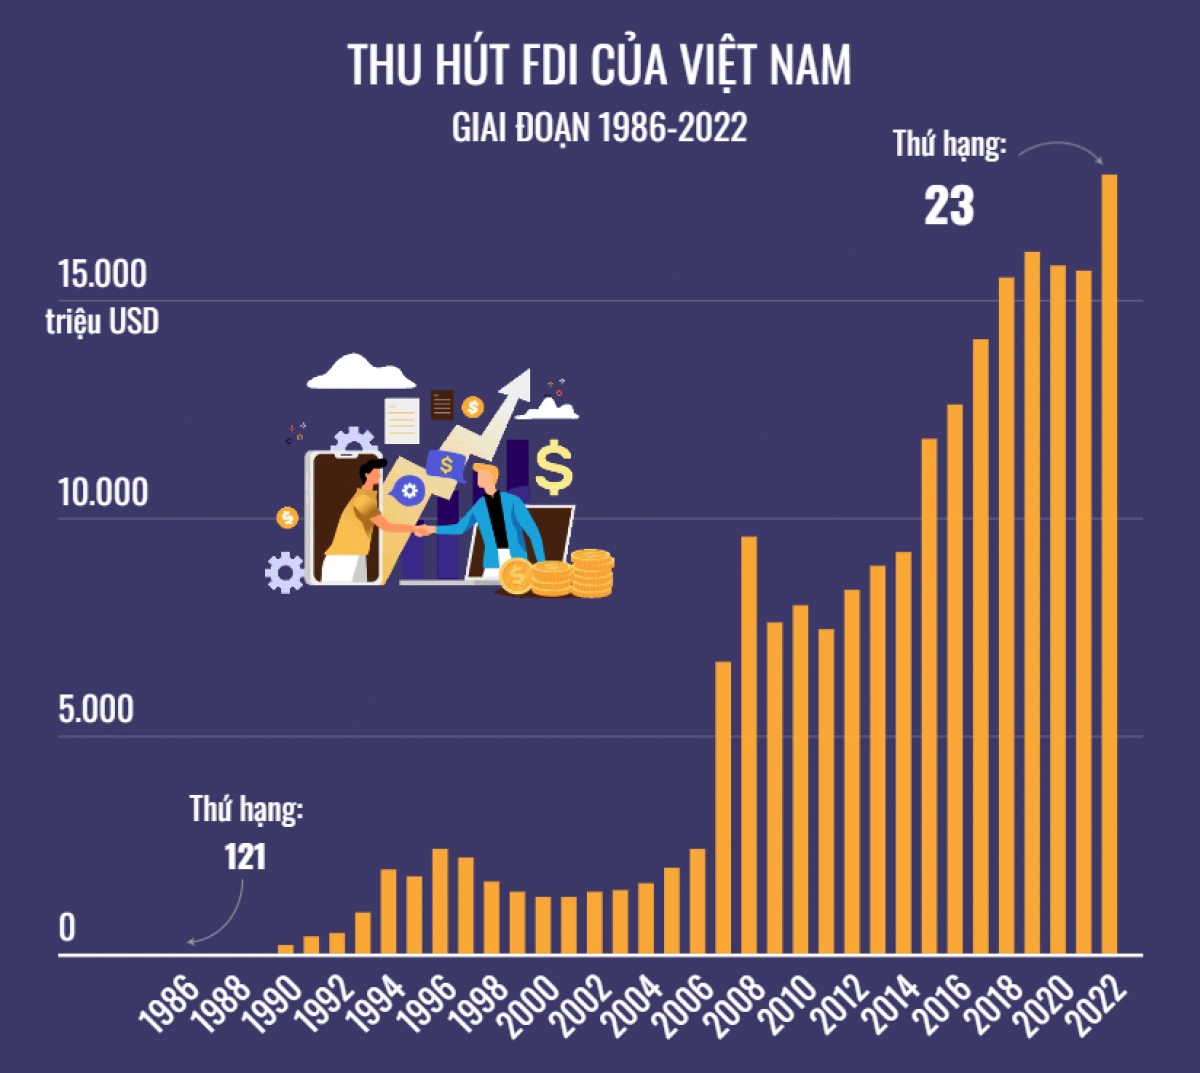 Việt Nam - điểm sáng trên bản đồ thu hút FDI - Ảnh 2.